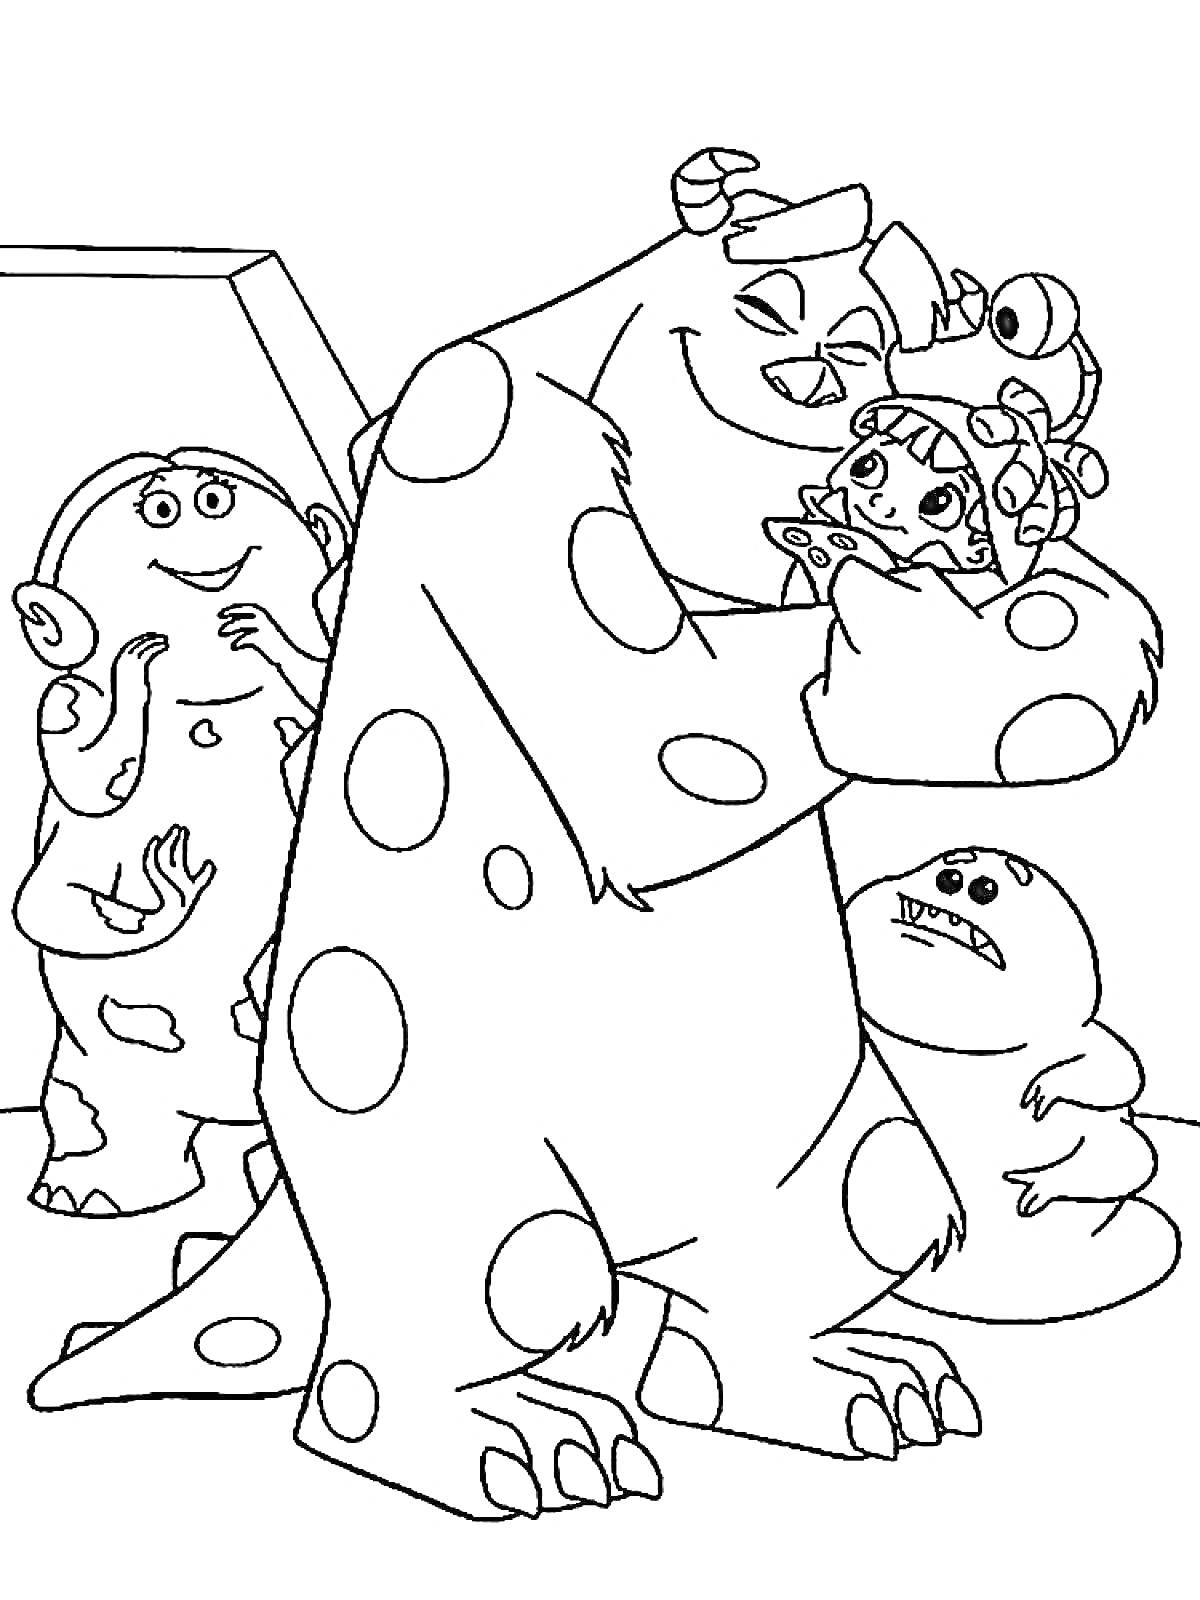 Раскраска Большой монстр с рогами держит девочку, монстр с тремя глазами и монстр с большим ртом рядом